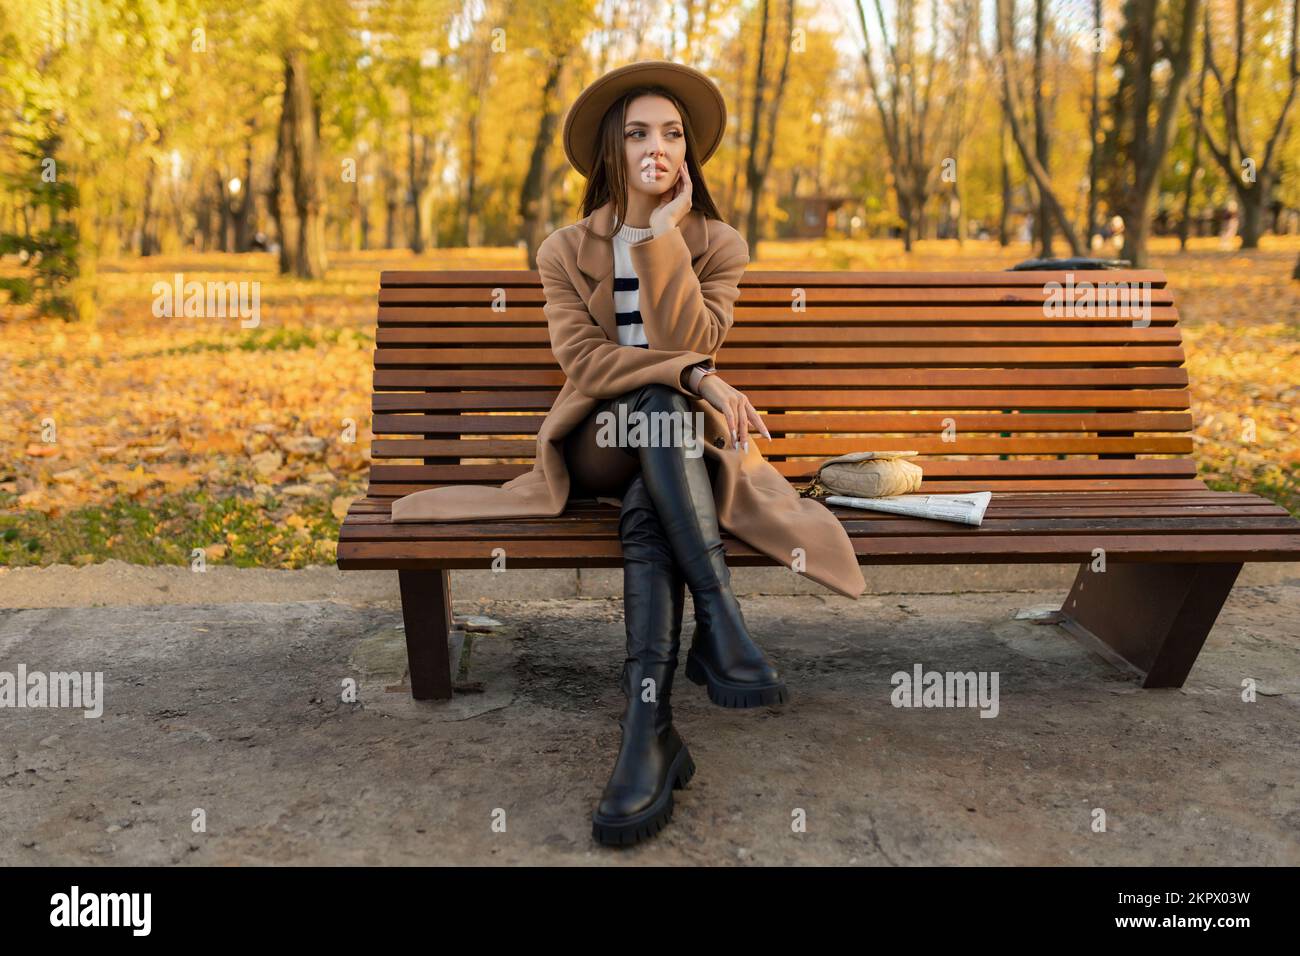 Porträt eines attraktiven, stilvollen, lächelnden Porträts einer attraktiven, stilvollen, lächelnden Frau mit langen Haaren, die im Park spaziert, gekleidet in einem warmen braunen Mantel Stockfoto